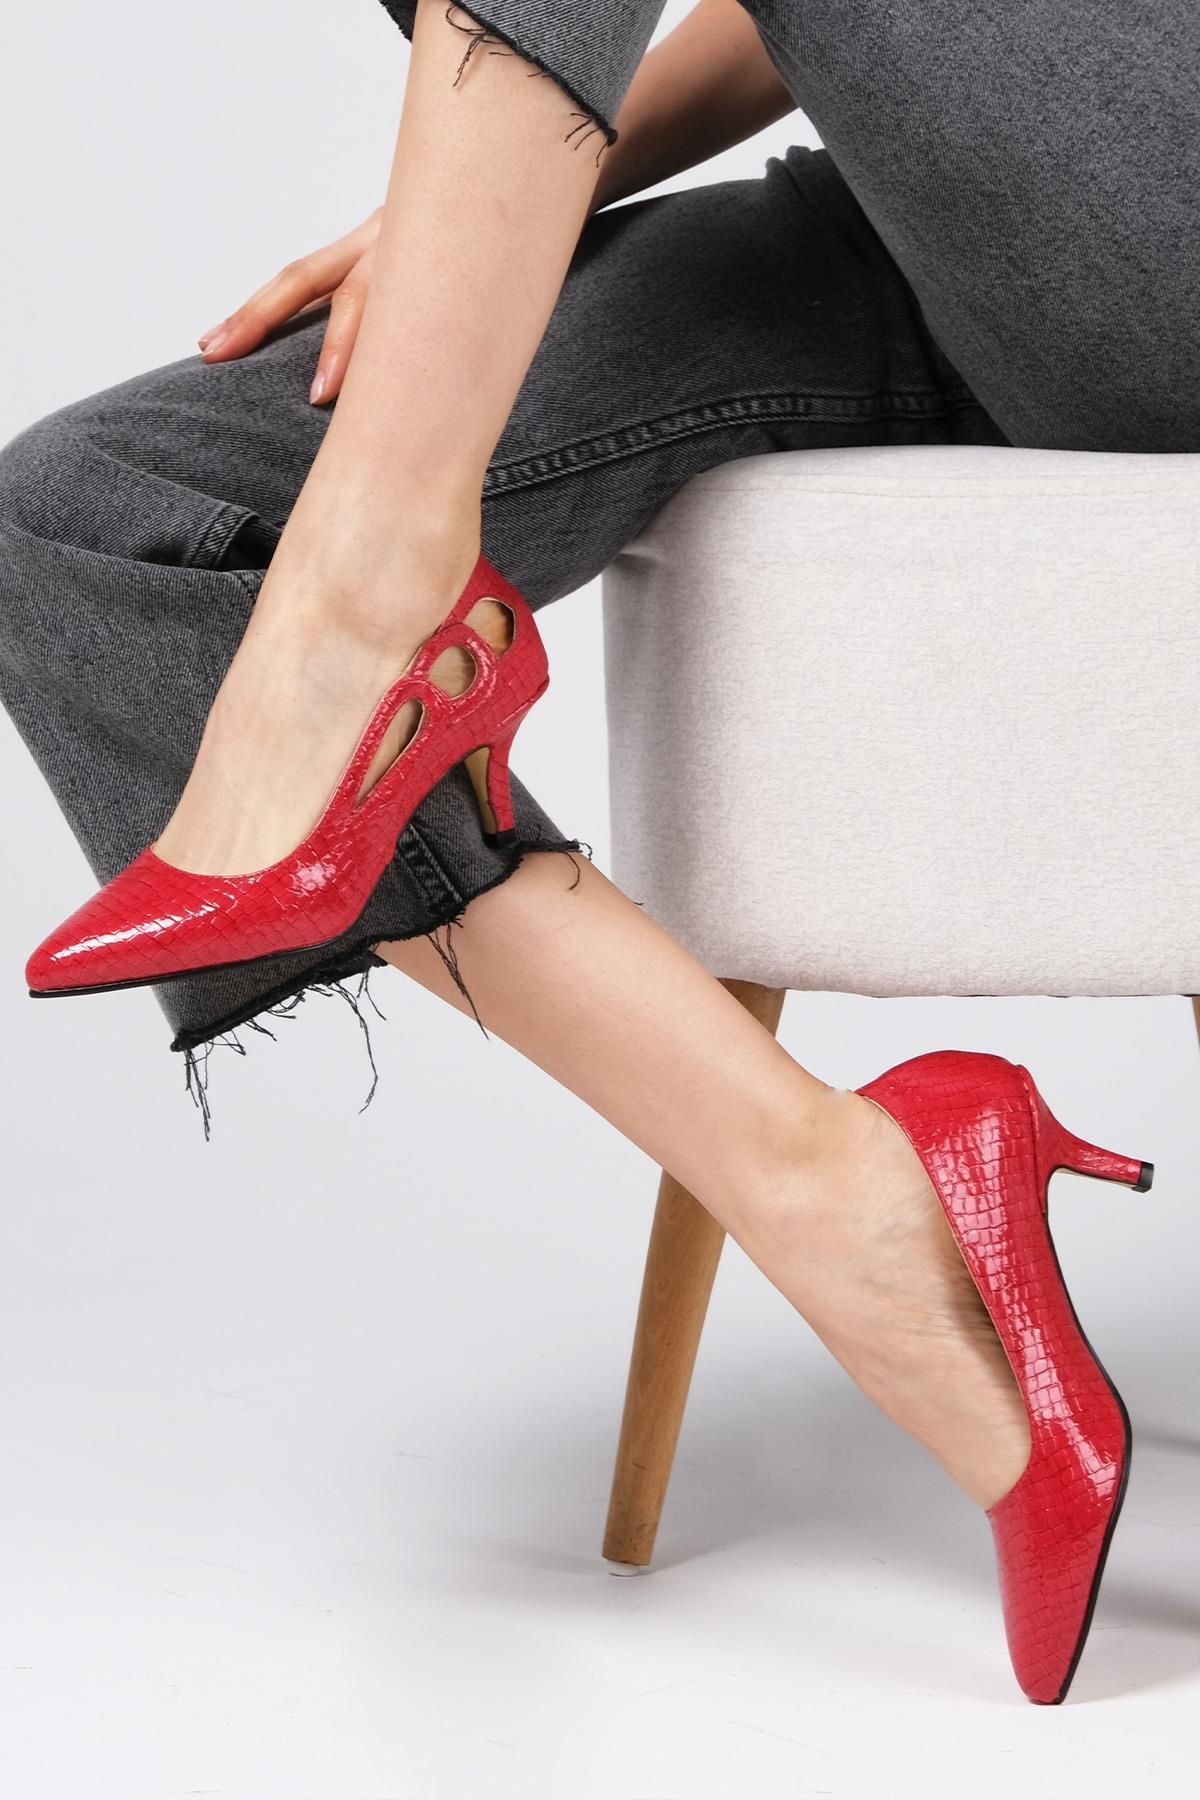 Mio Gusto Marion Kırmızı Renk Kadın Kısa Topuklu Ayakkabı